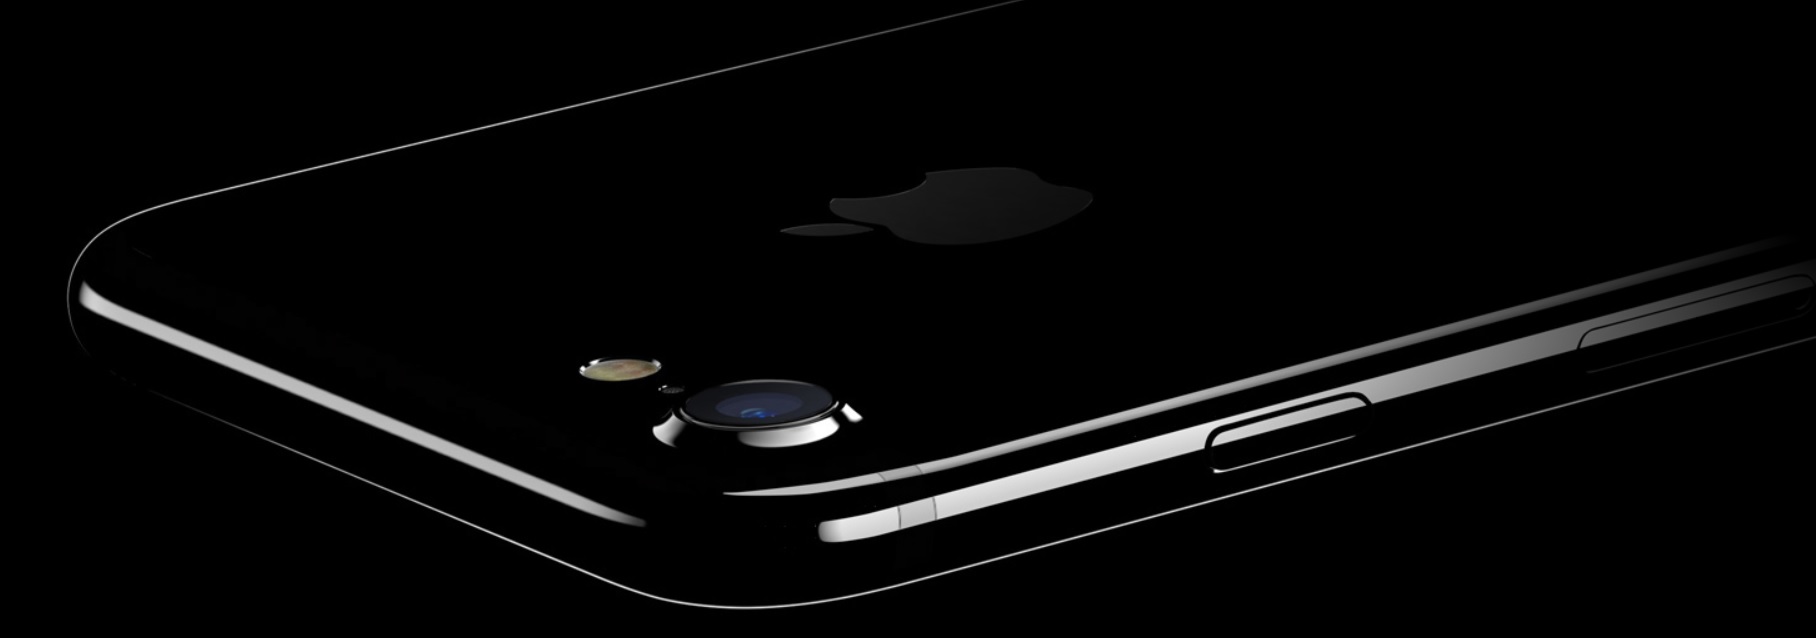 iPhone 8 kan bli utstyrt med glassbakside som gir samme effekt som dagens Jet Black, men som riper mindre.